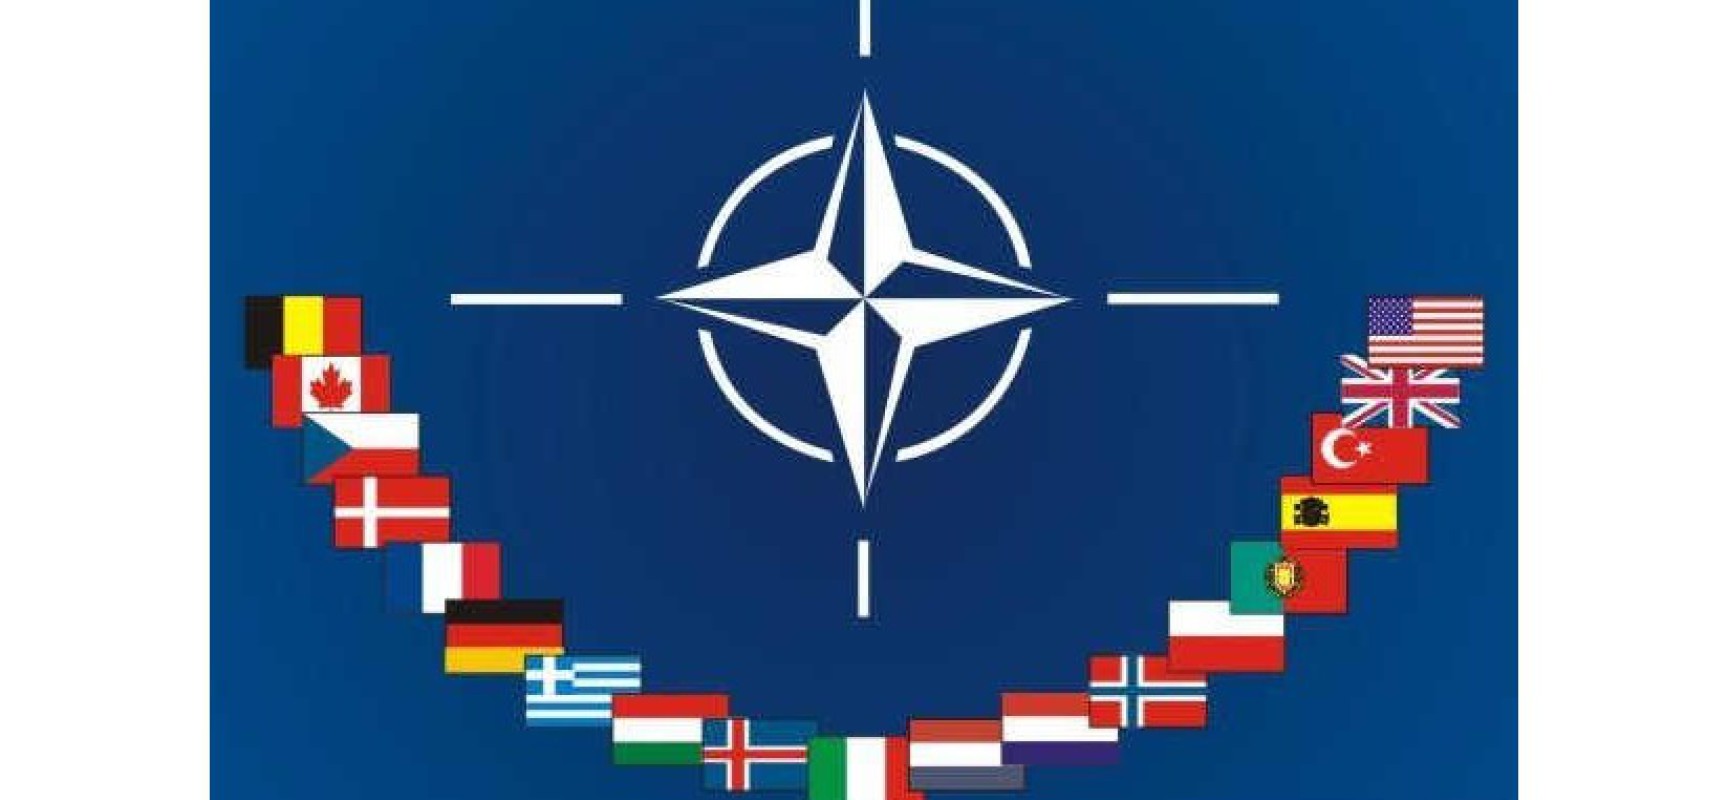 L’arrivée de Trump au pouvoir impulse une nouvelle dynamique à la défense de l’Europe et l’OTAN